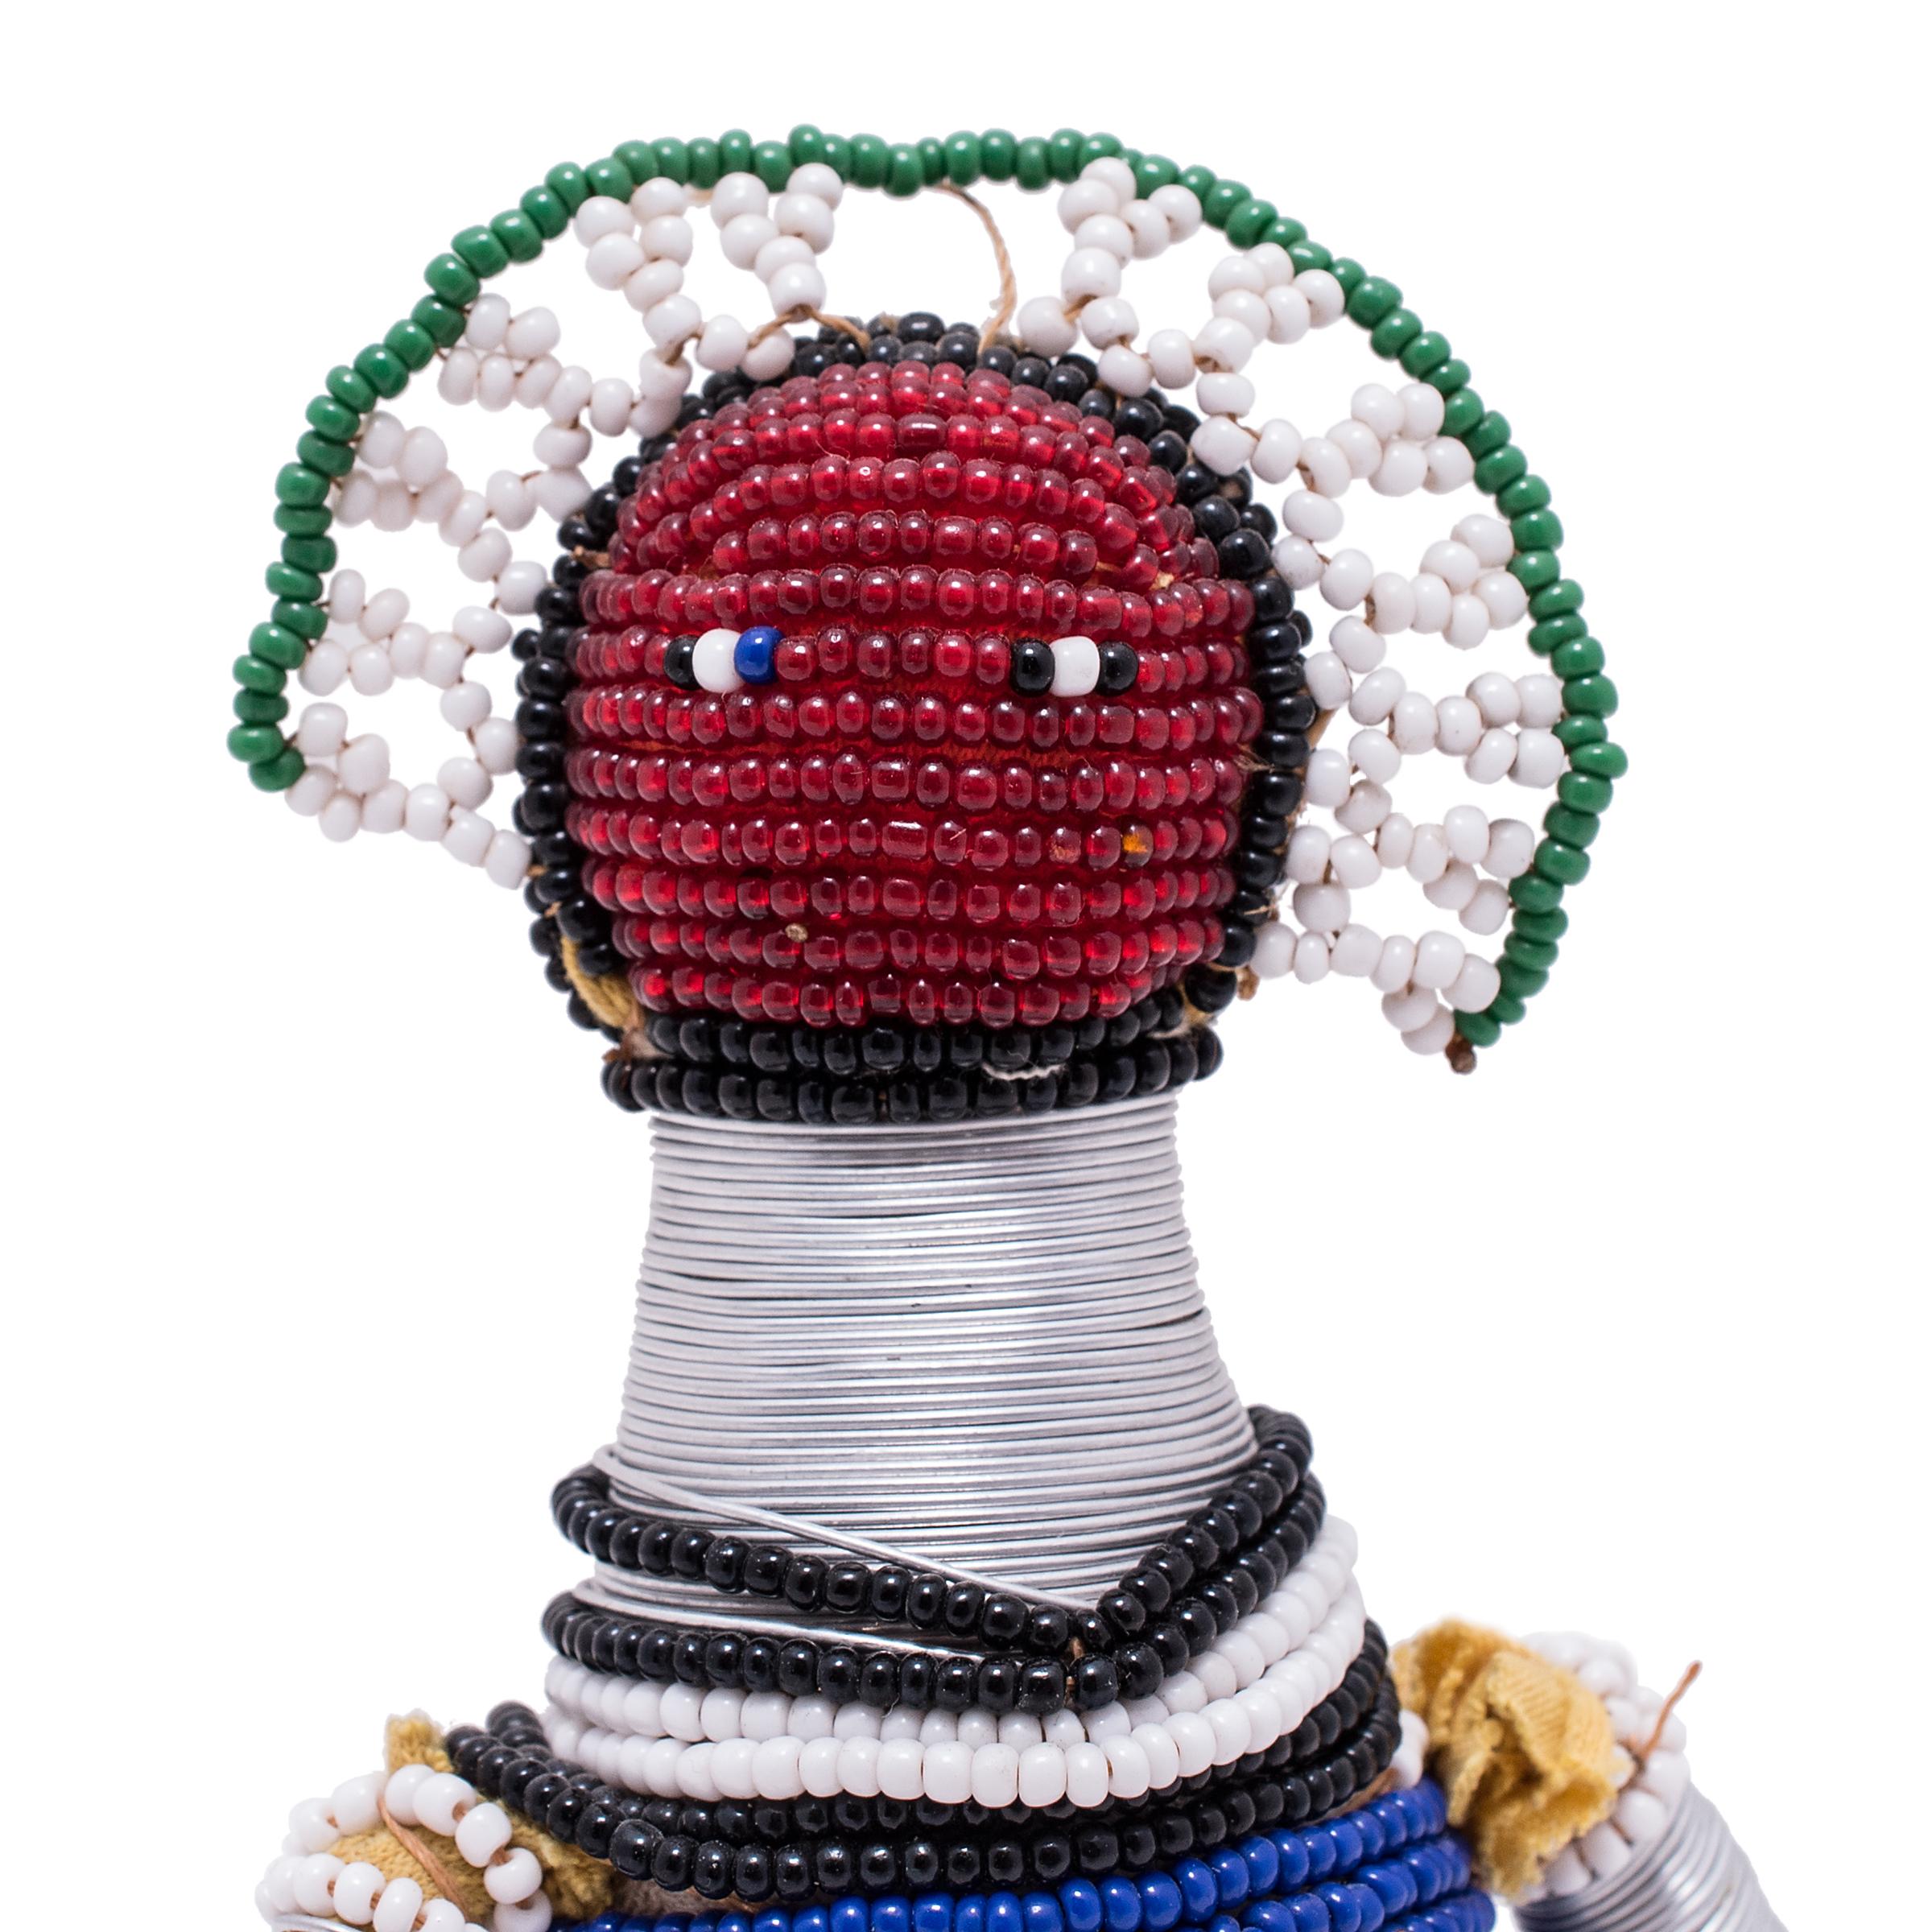 Folk Art Beaded Ndebele Fertility Doll For Sale